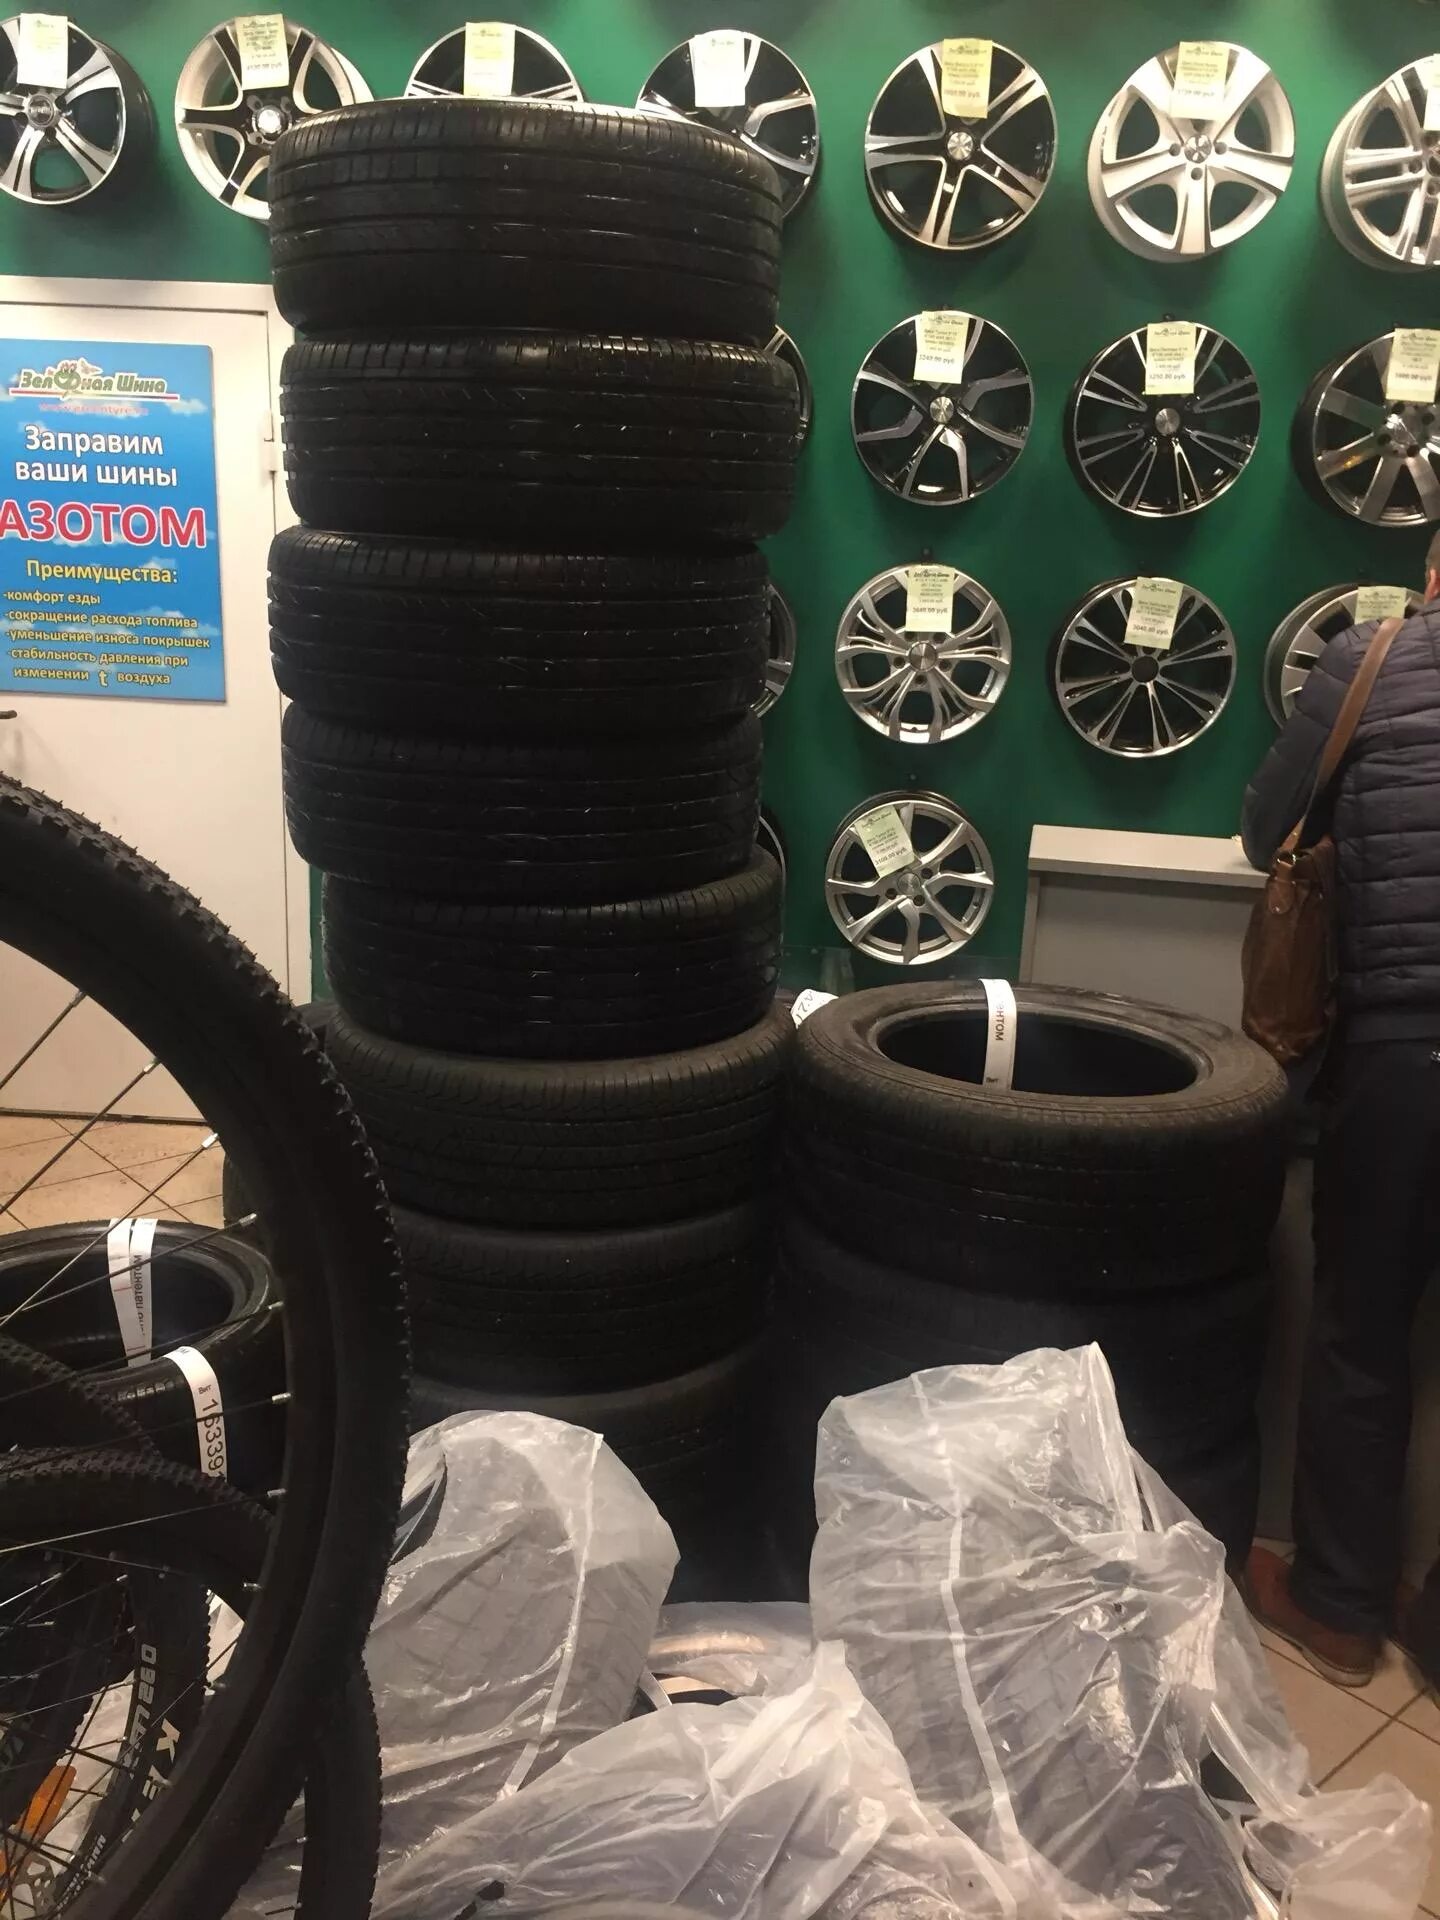 Зелёная шина на Софийской 108. Зеленая шина шины. Колесо магазин шин в СПБ. Зелёное колесо магазин шин в СПБ.